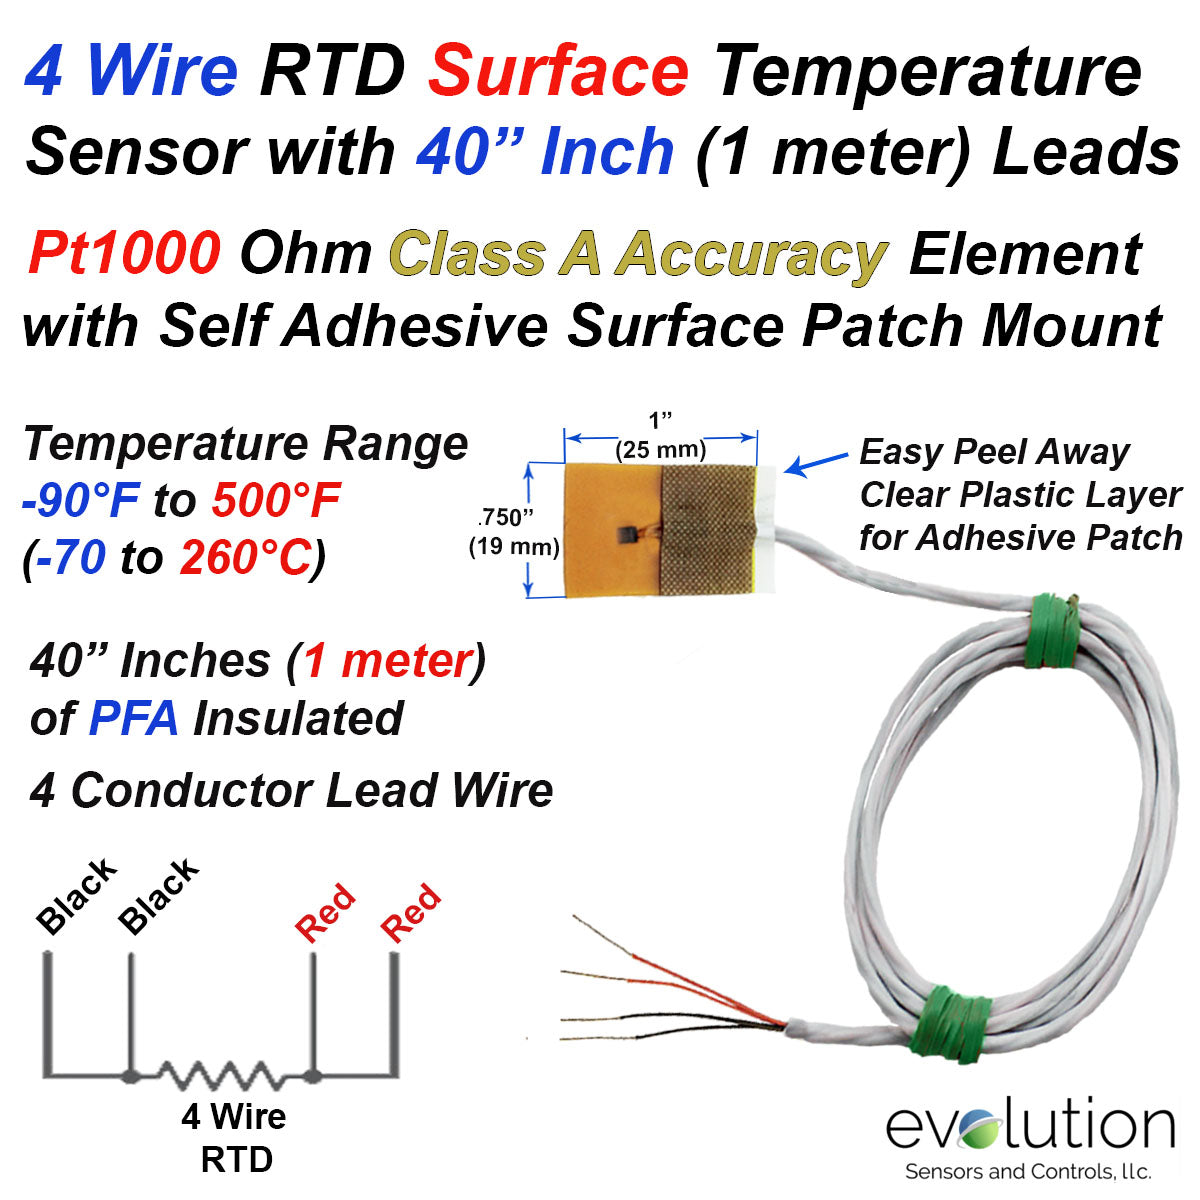 WiFi temperature sensor for Pt1000 probes W07x1 - Elsist